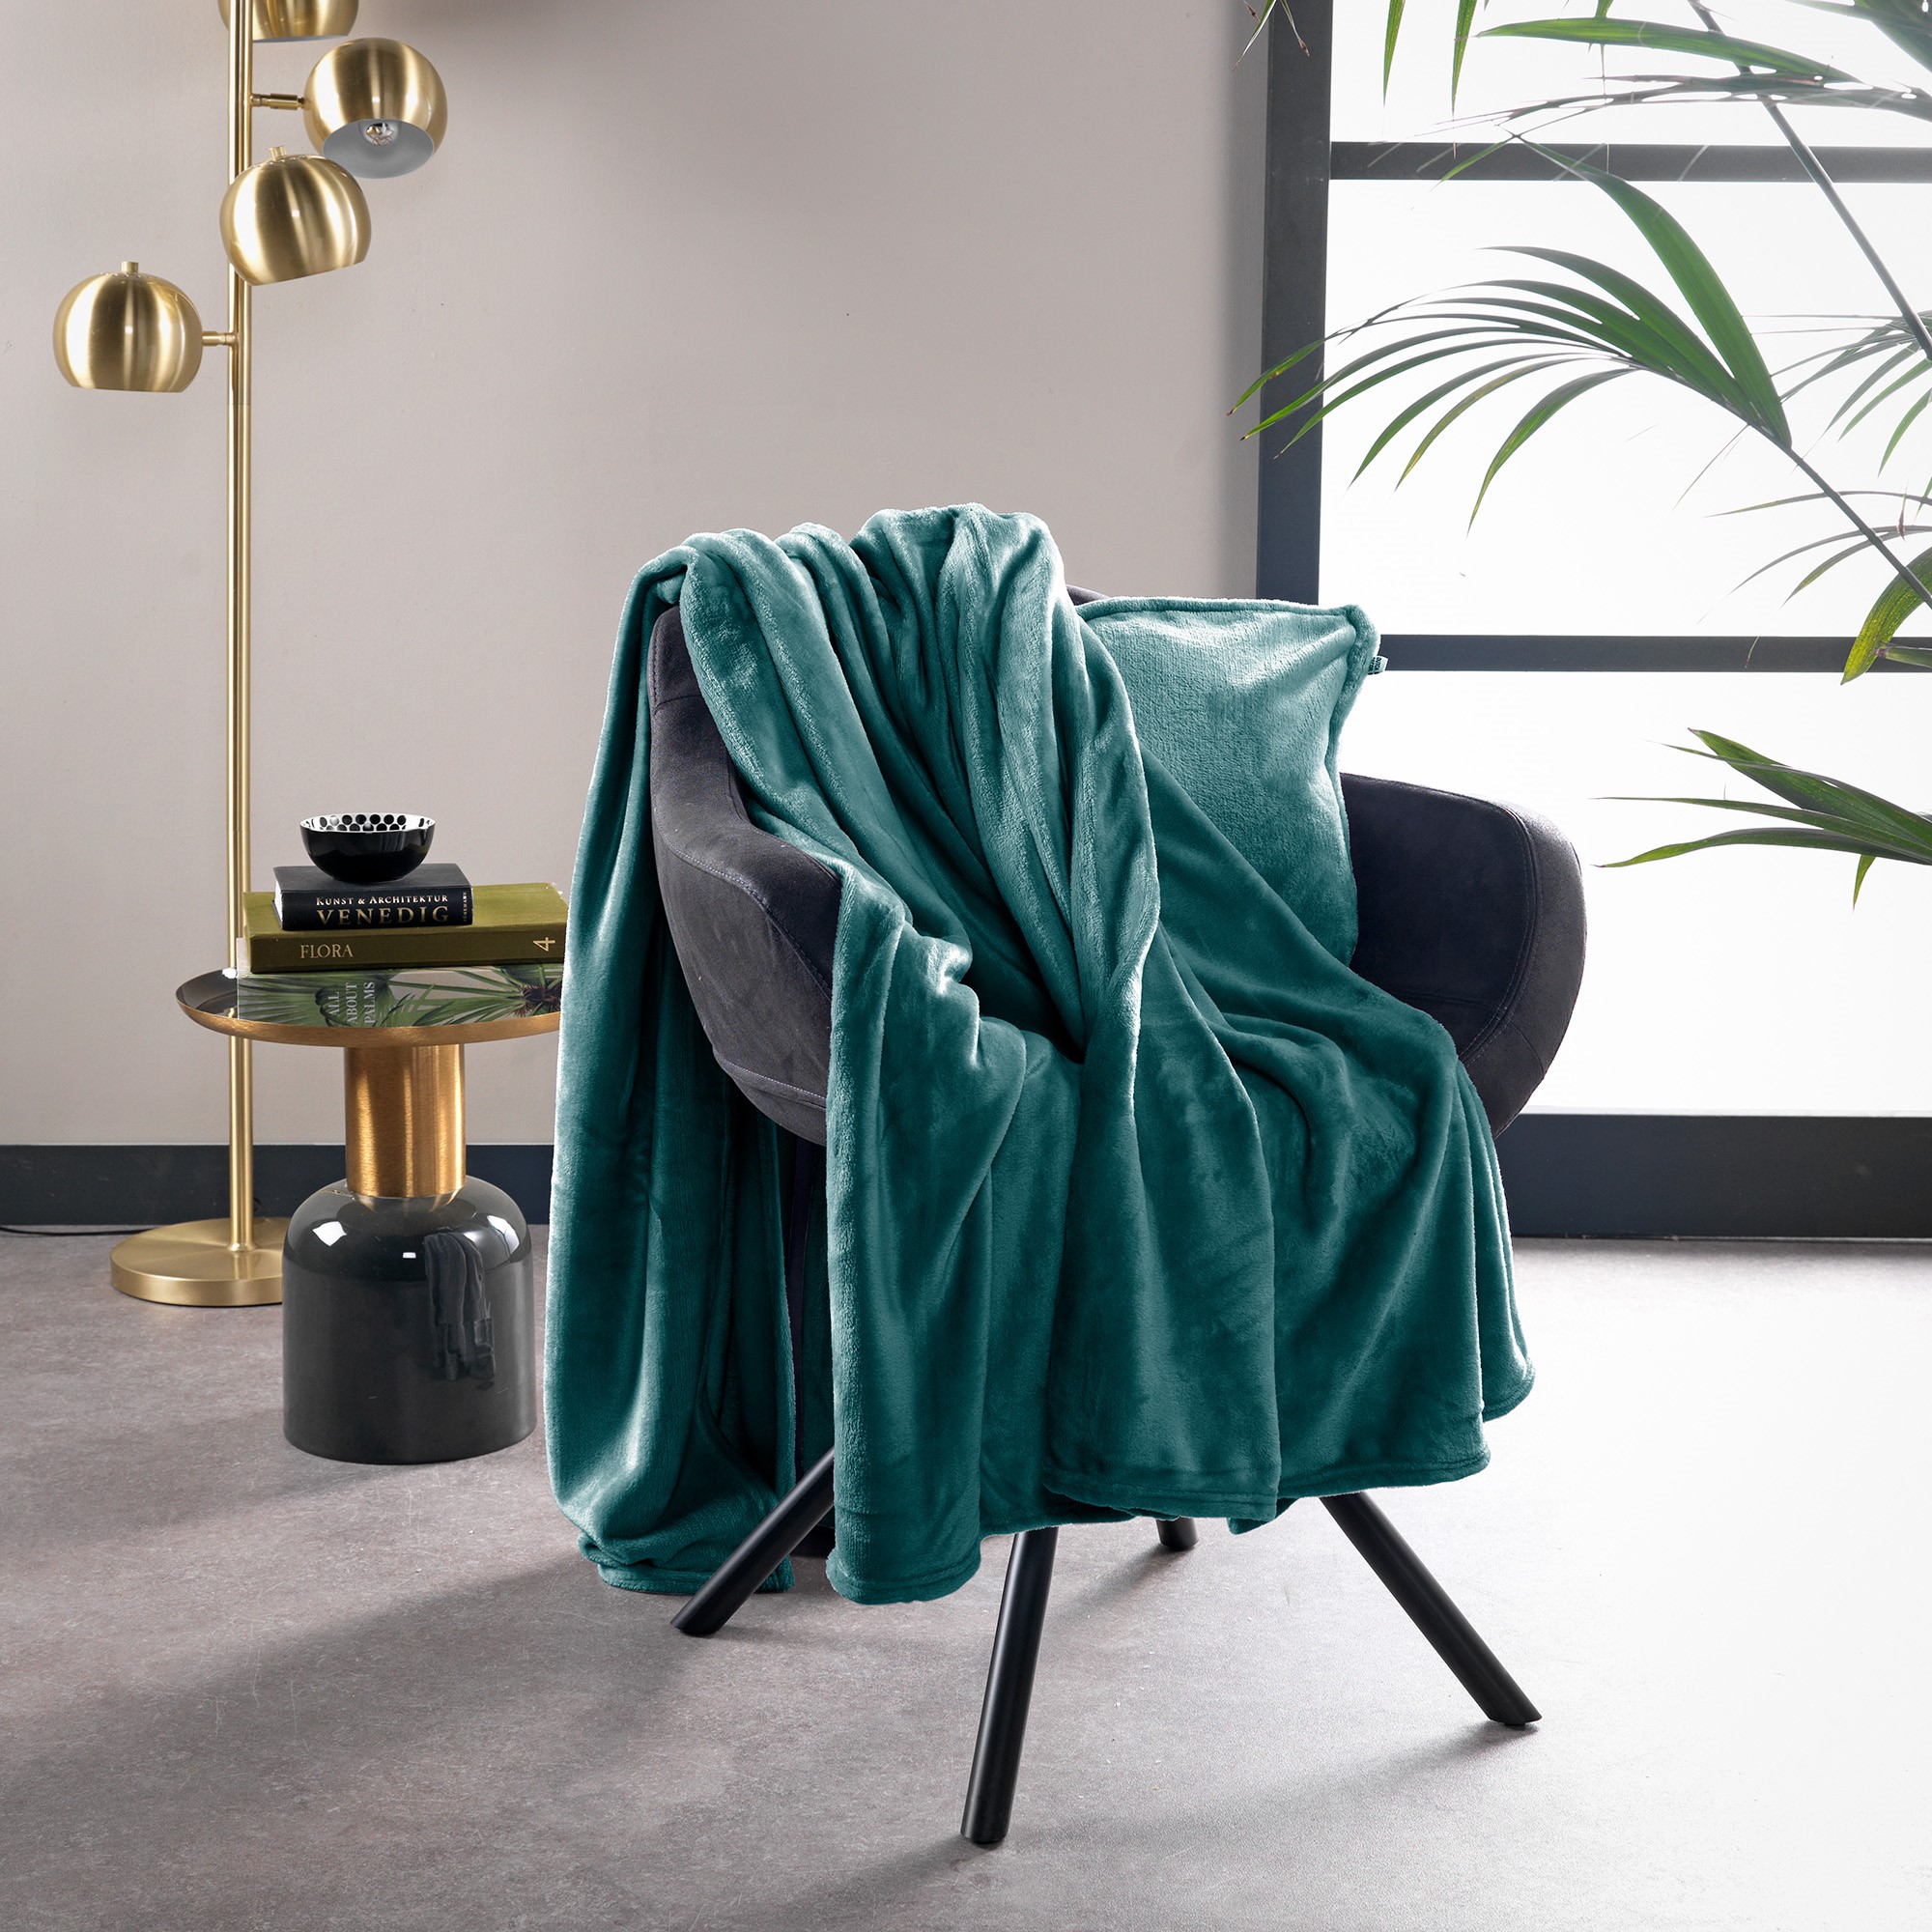 BILLY - Plaid flannel fleece 150x200 cm - Sagebrush Green - groen - superzacht